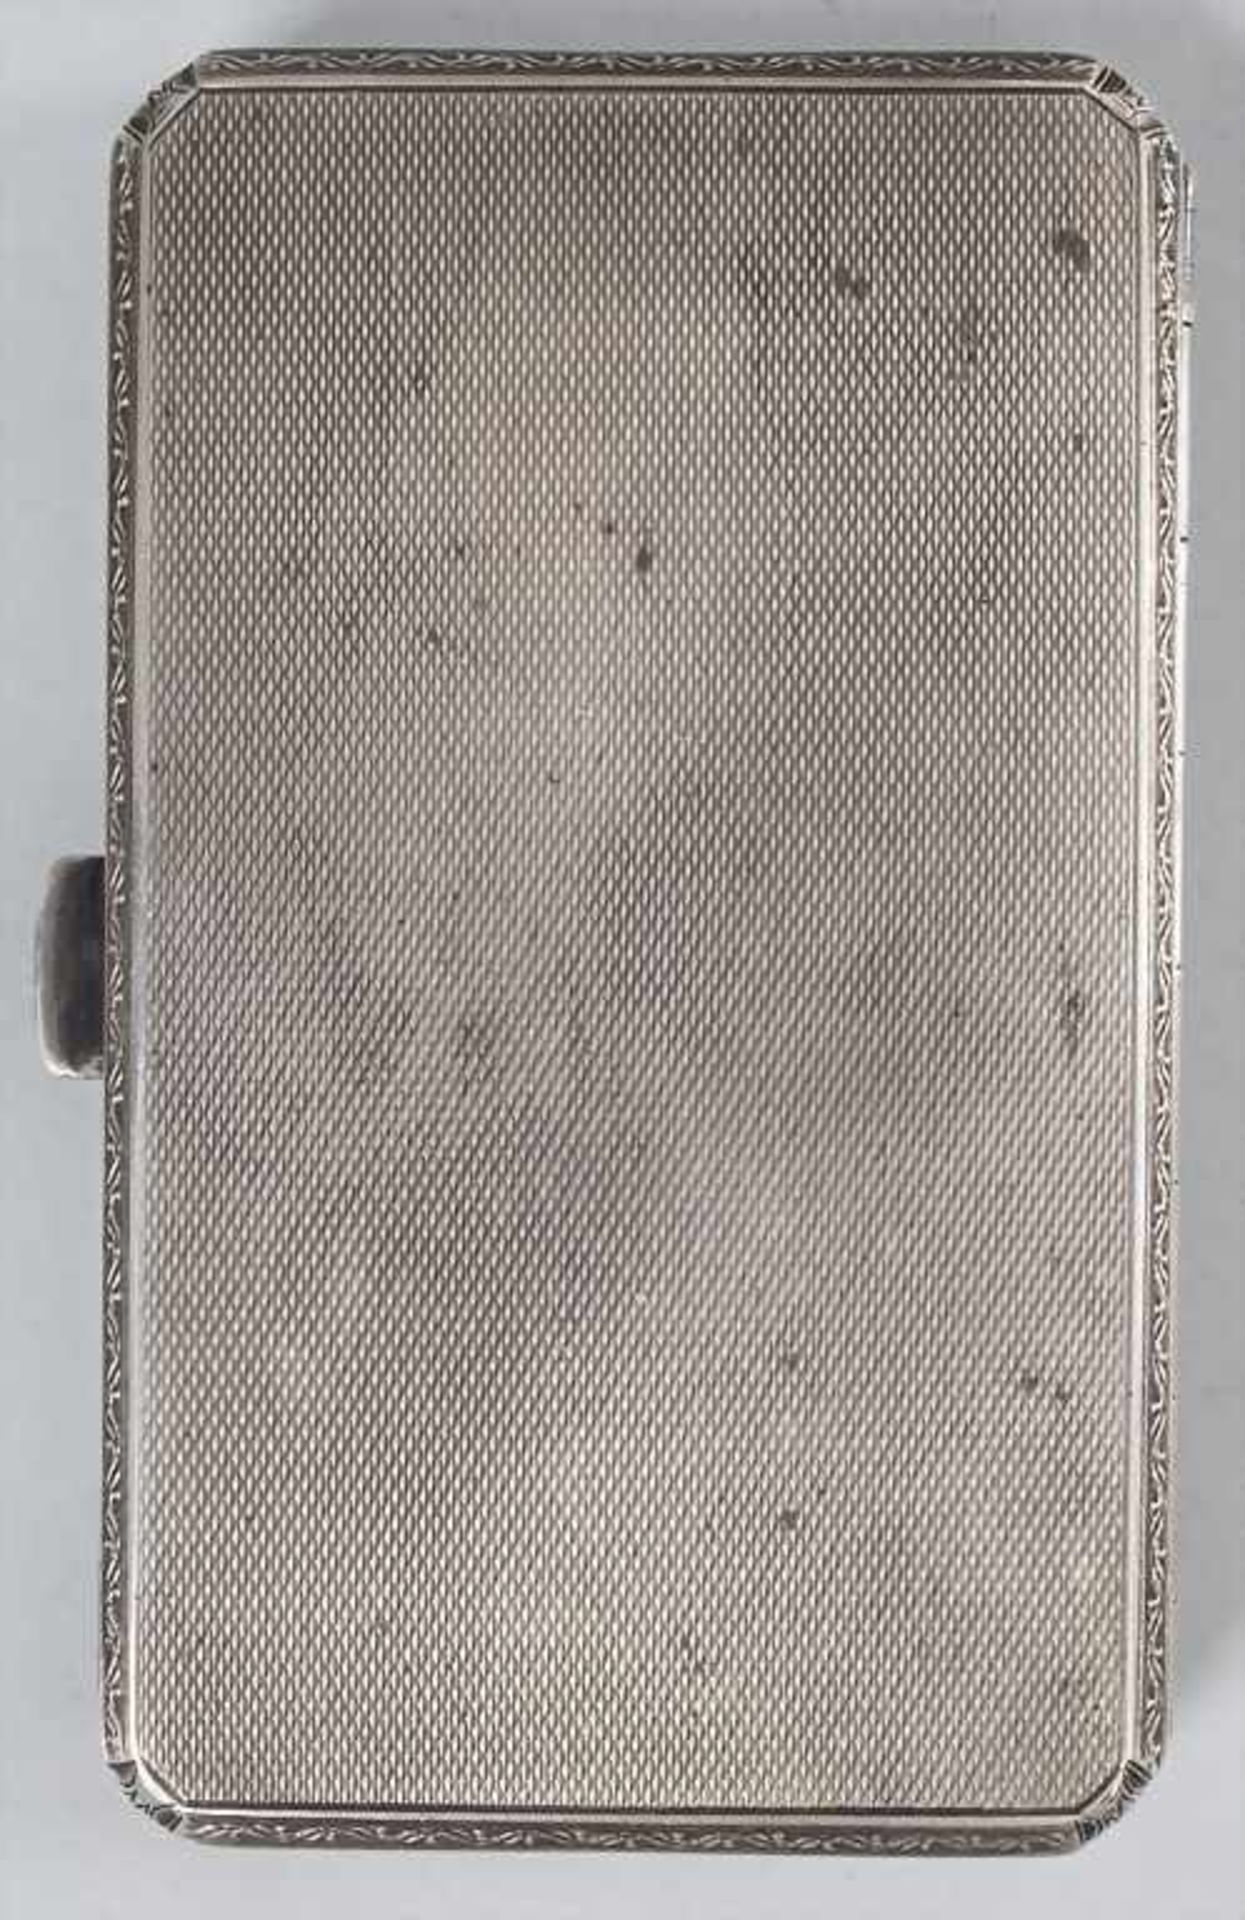 Art Déco Zigarettenetui / An Art Deco silver cigarette case, um 1920 - Image 3 of 5